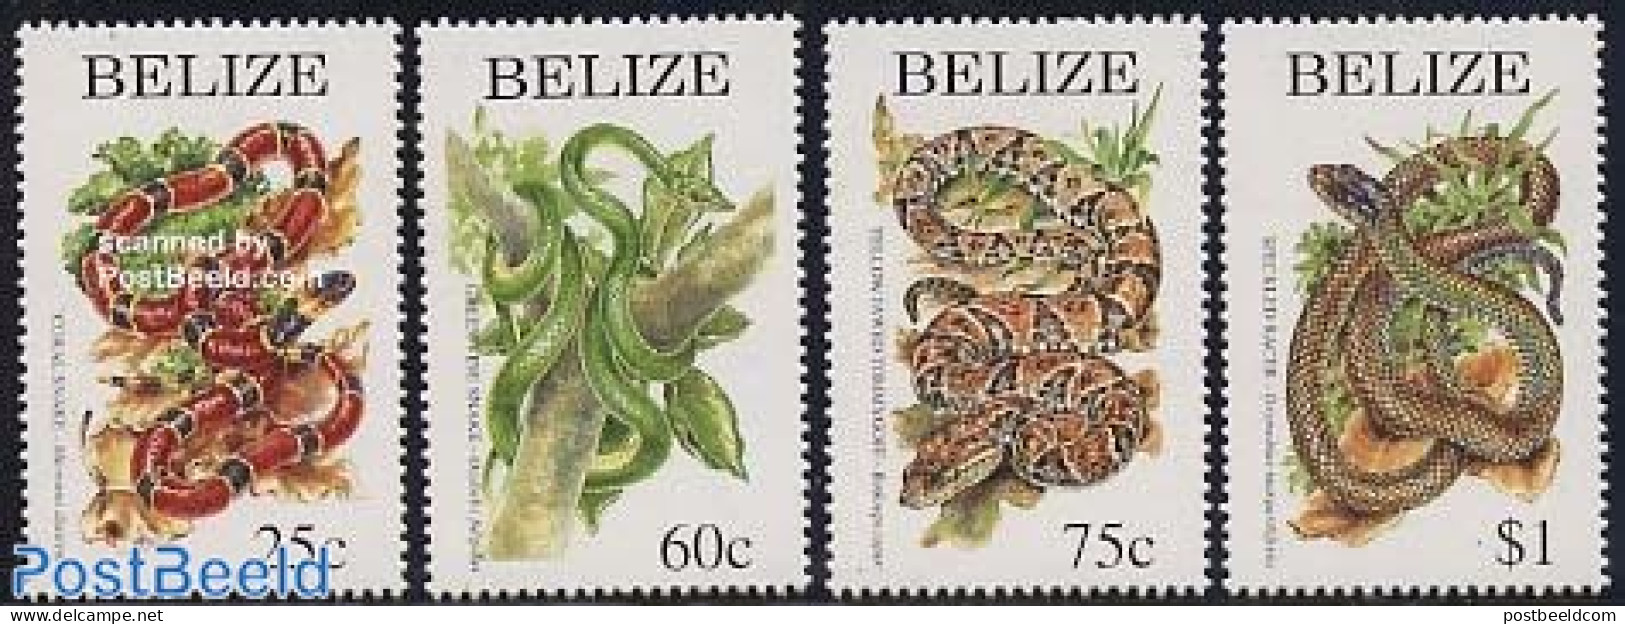 Belize/British Honduras 1997 Snakes 4v, Mint NH, Nature - Reptiles - Snakes - Honduras Britannico (...-1970)